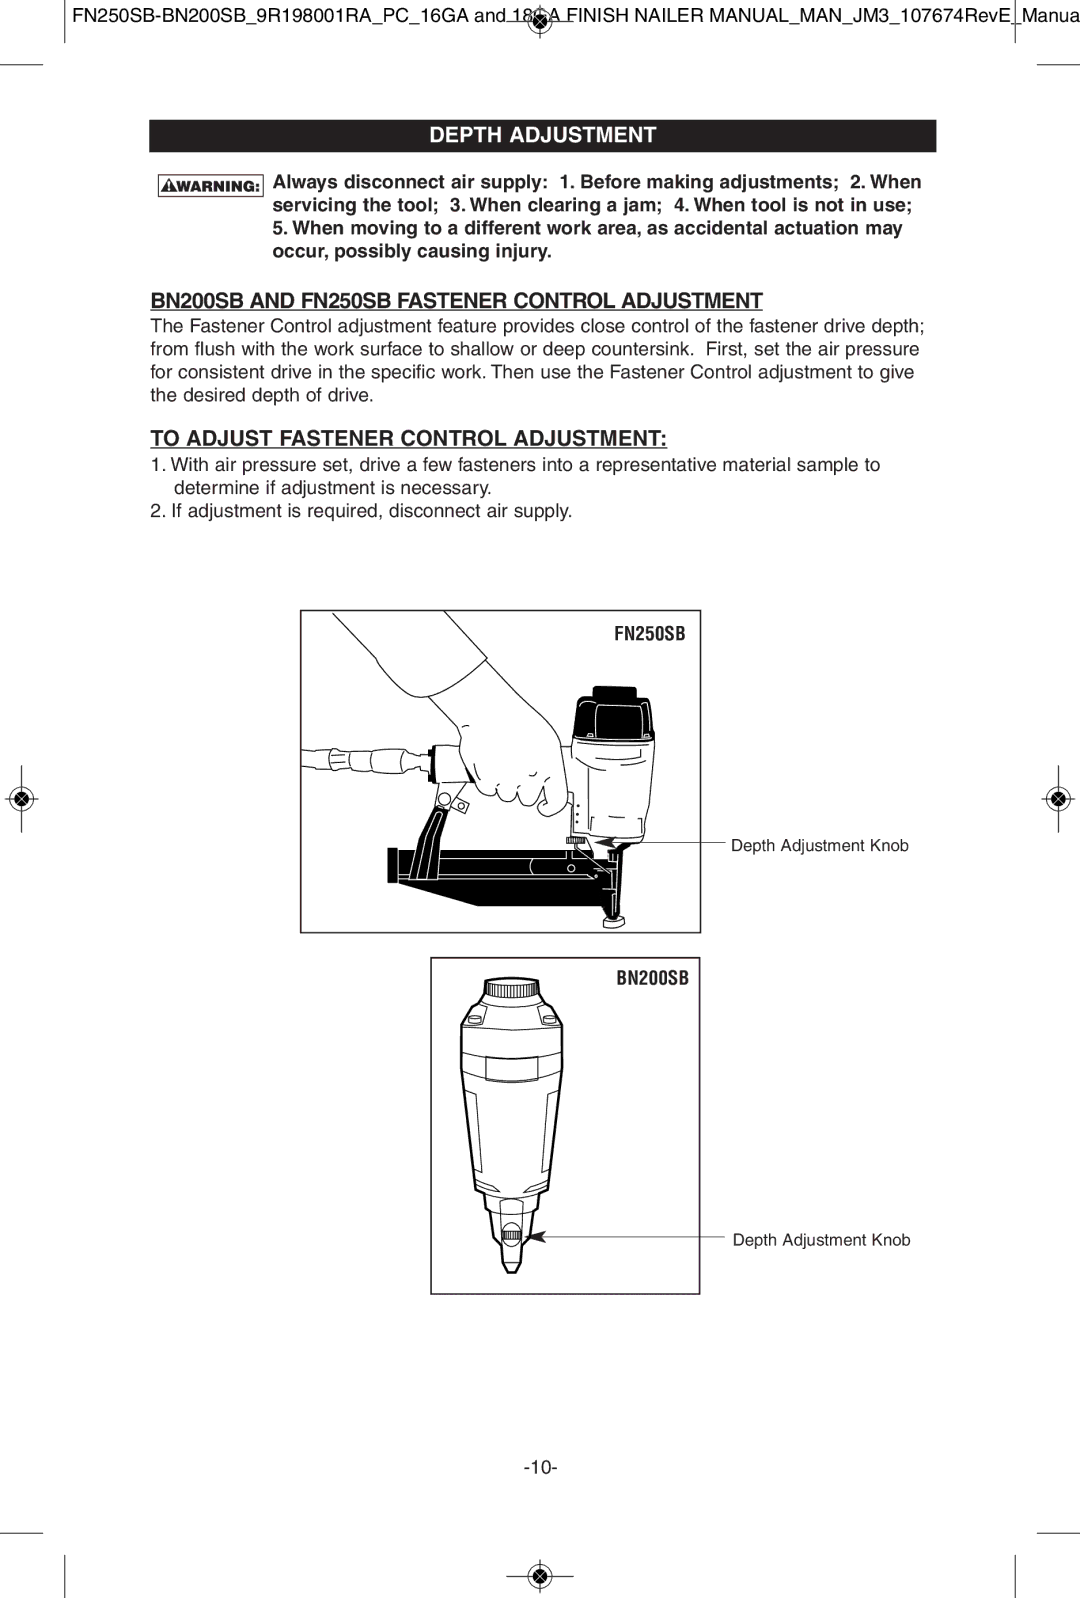 Porter-Cable instruction manual Depth Adjustmentdepth Adjustment, BN200SB and FN250SB Fastener Control Adjustment 